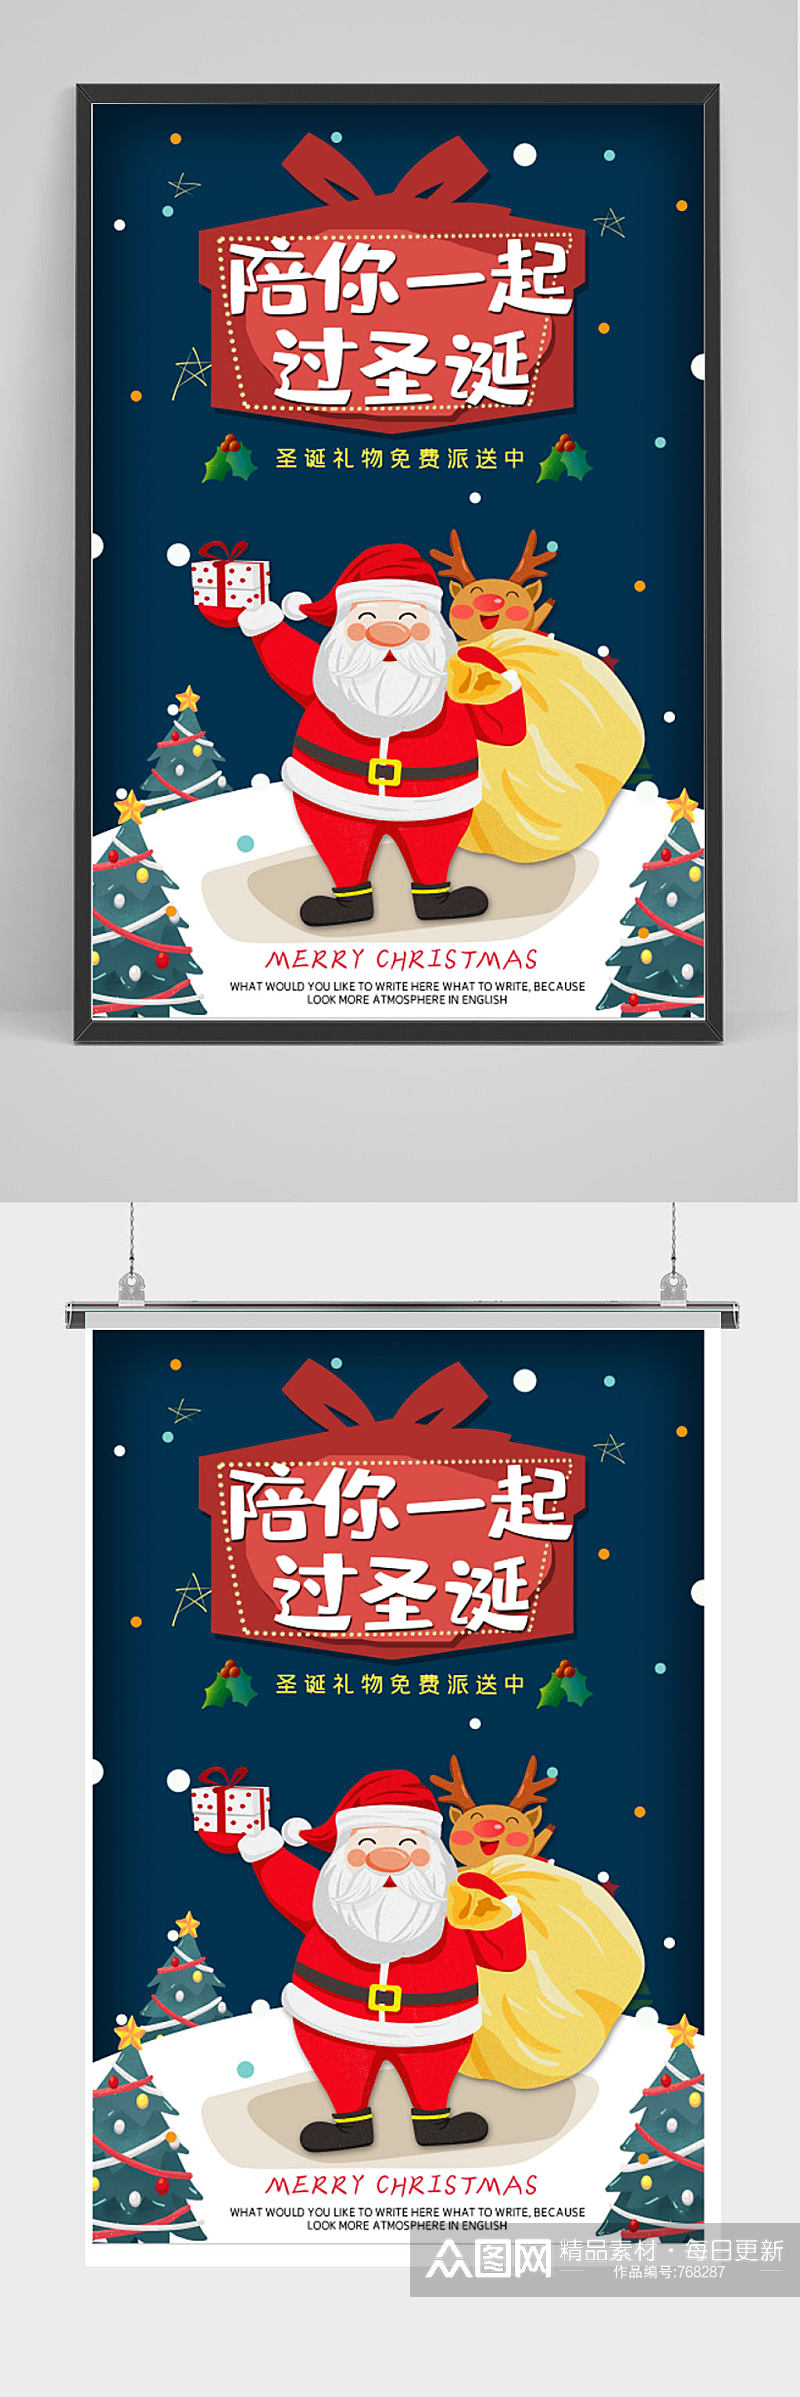 圣诞狂欢节商场宣传促销海报素材